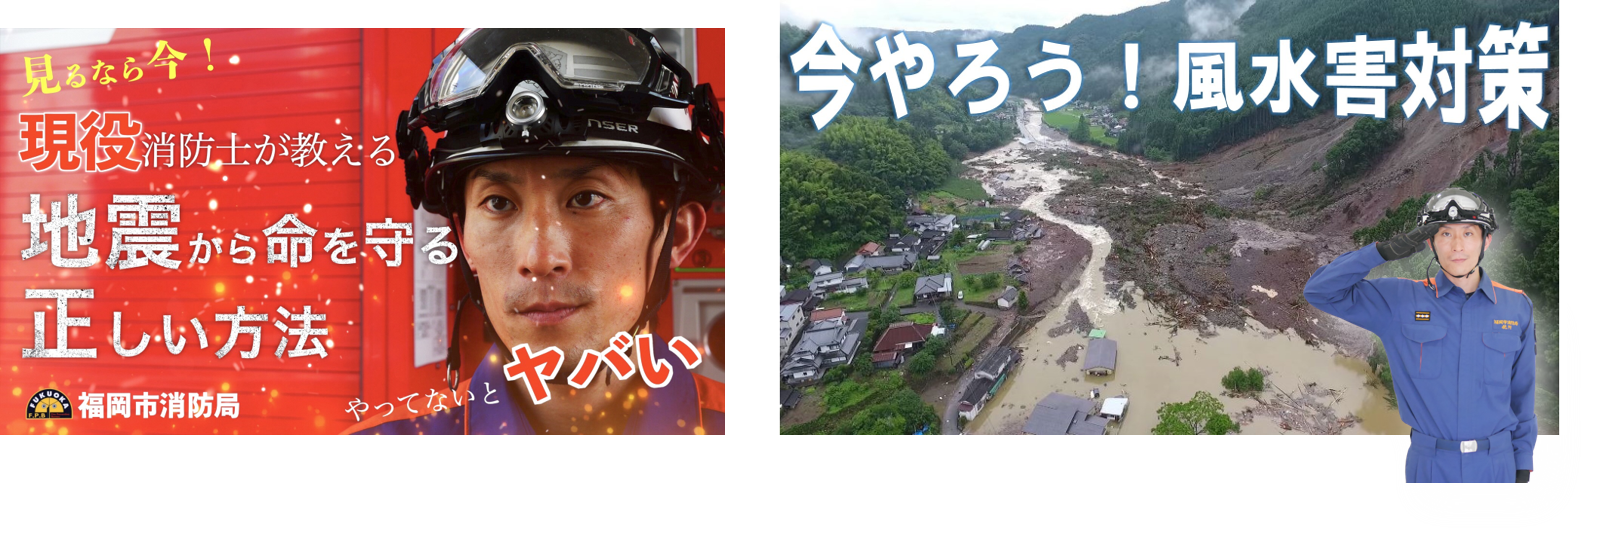 福岡市消防局オンライン来館の紹介ページ画像